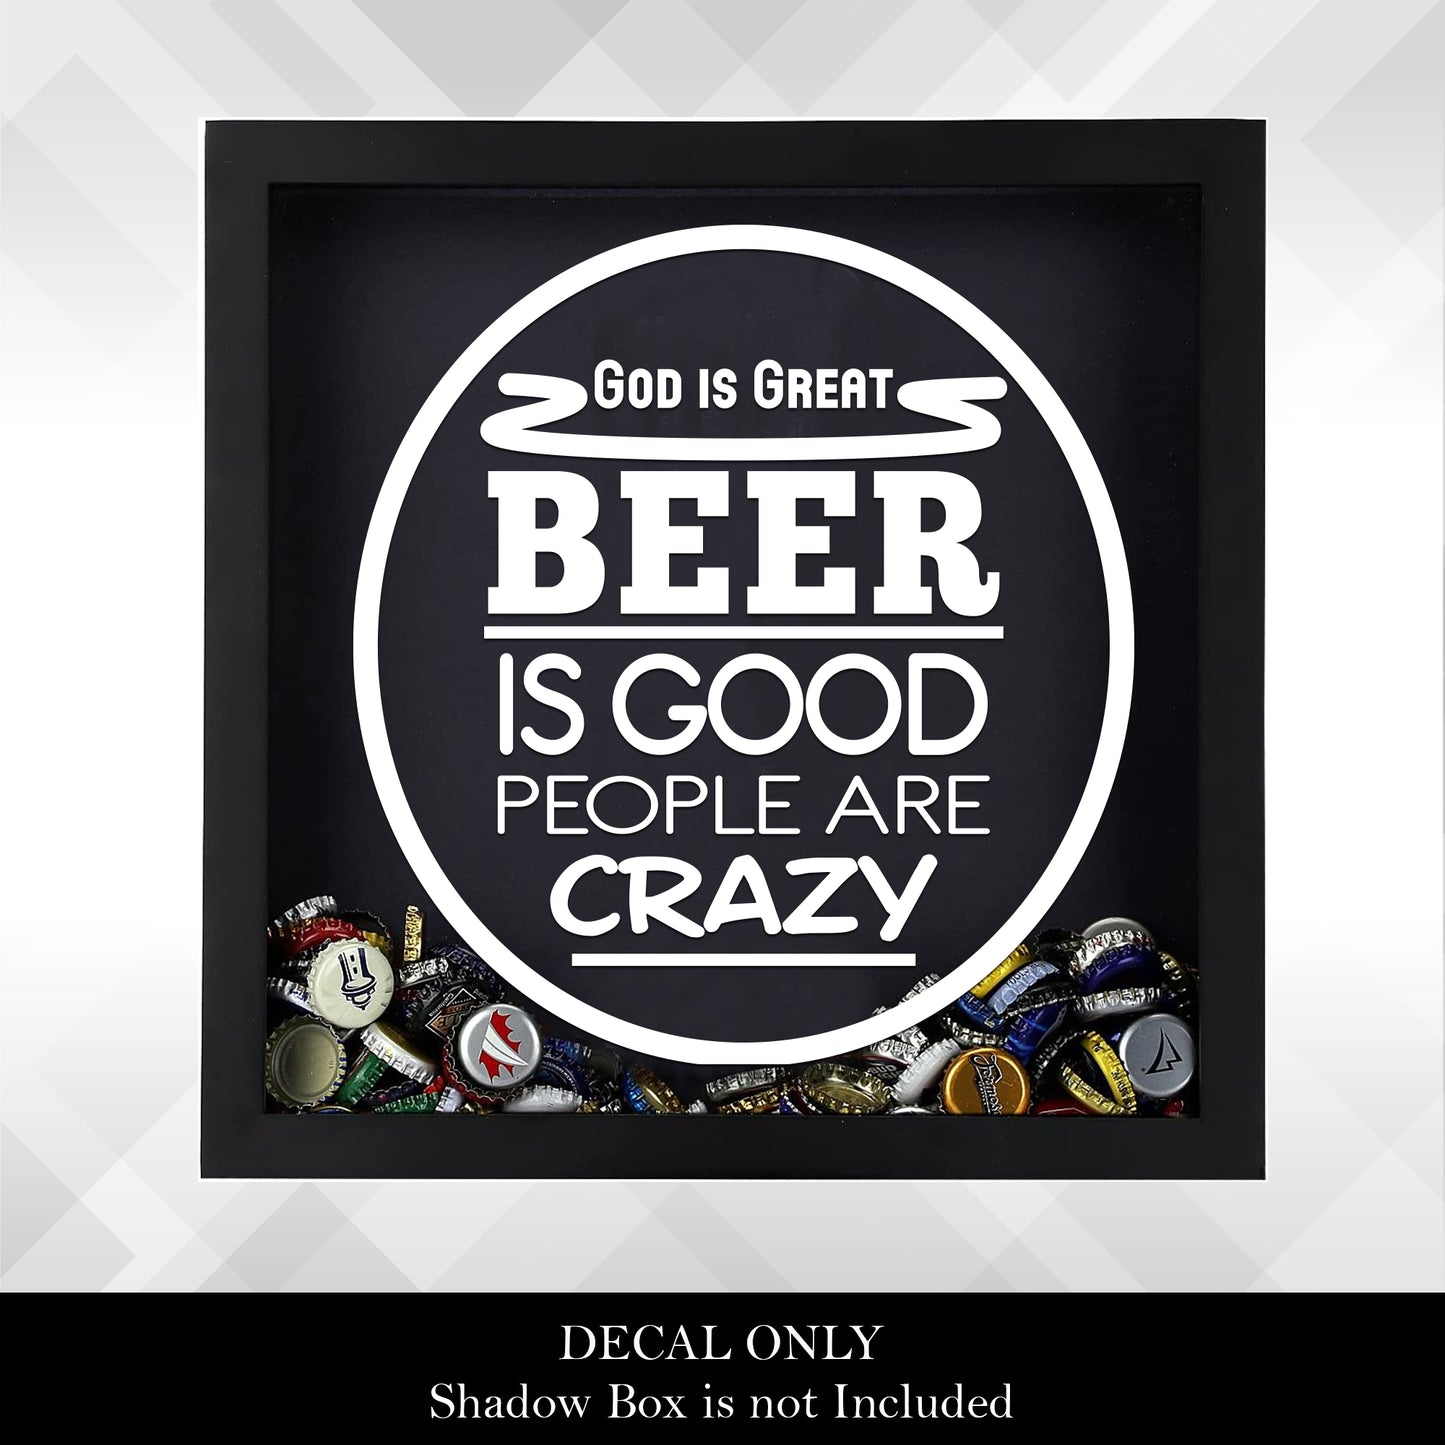 God is Great, Beer is Good | Vinyl Sticker Decal